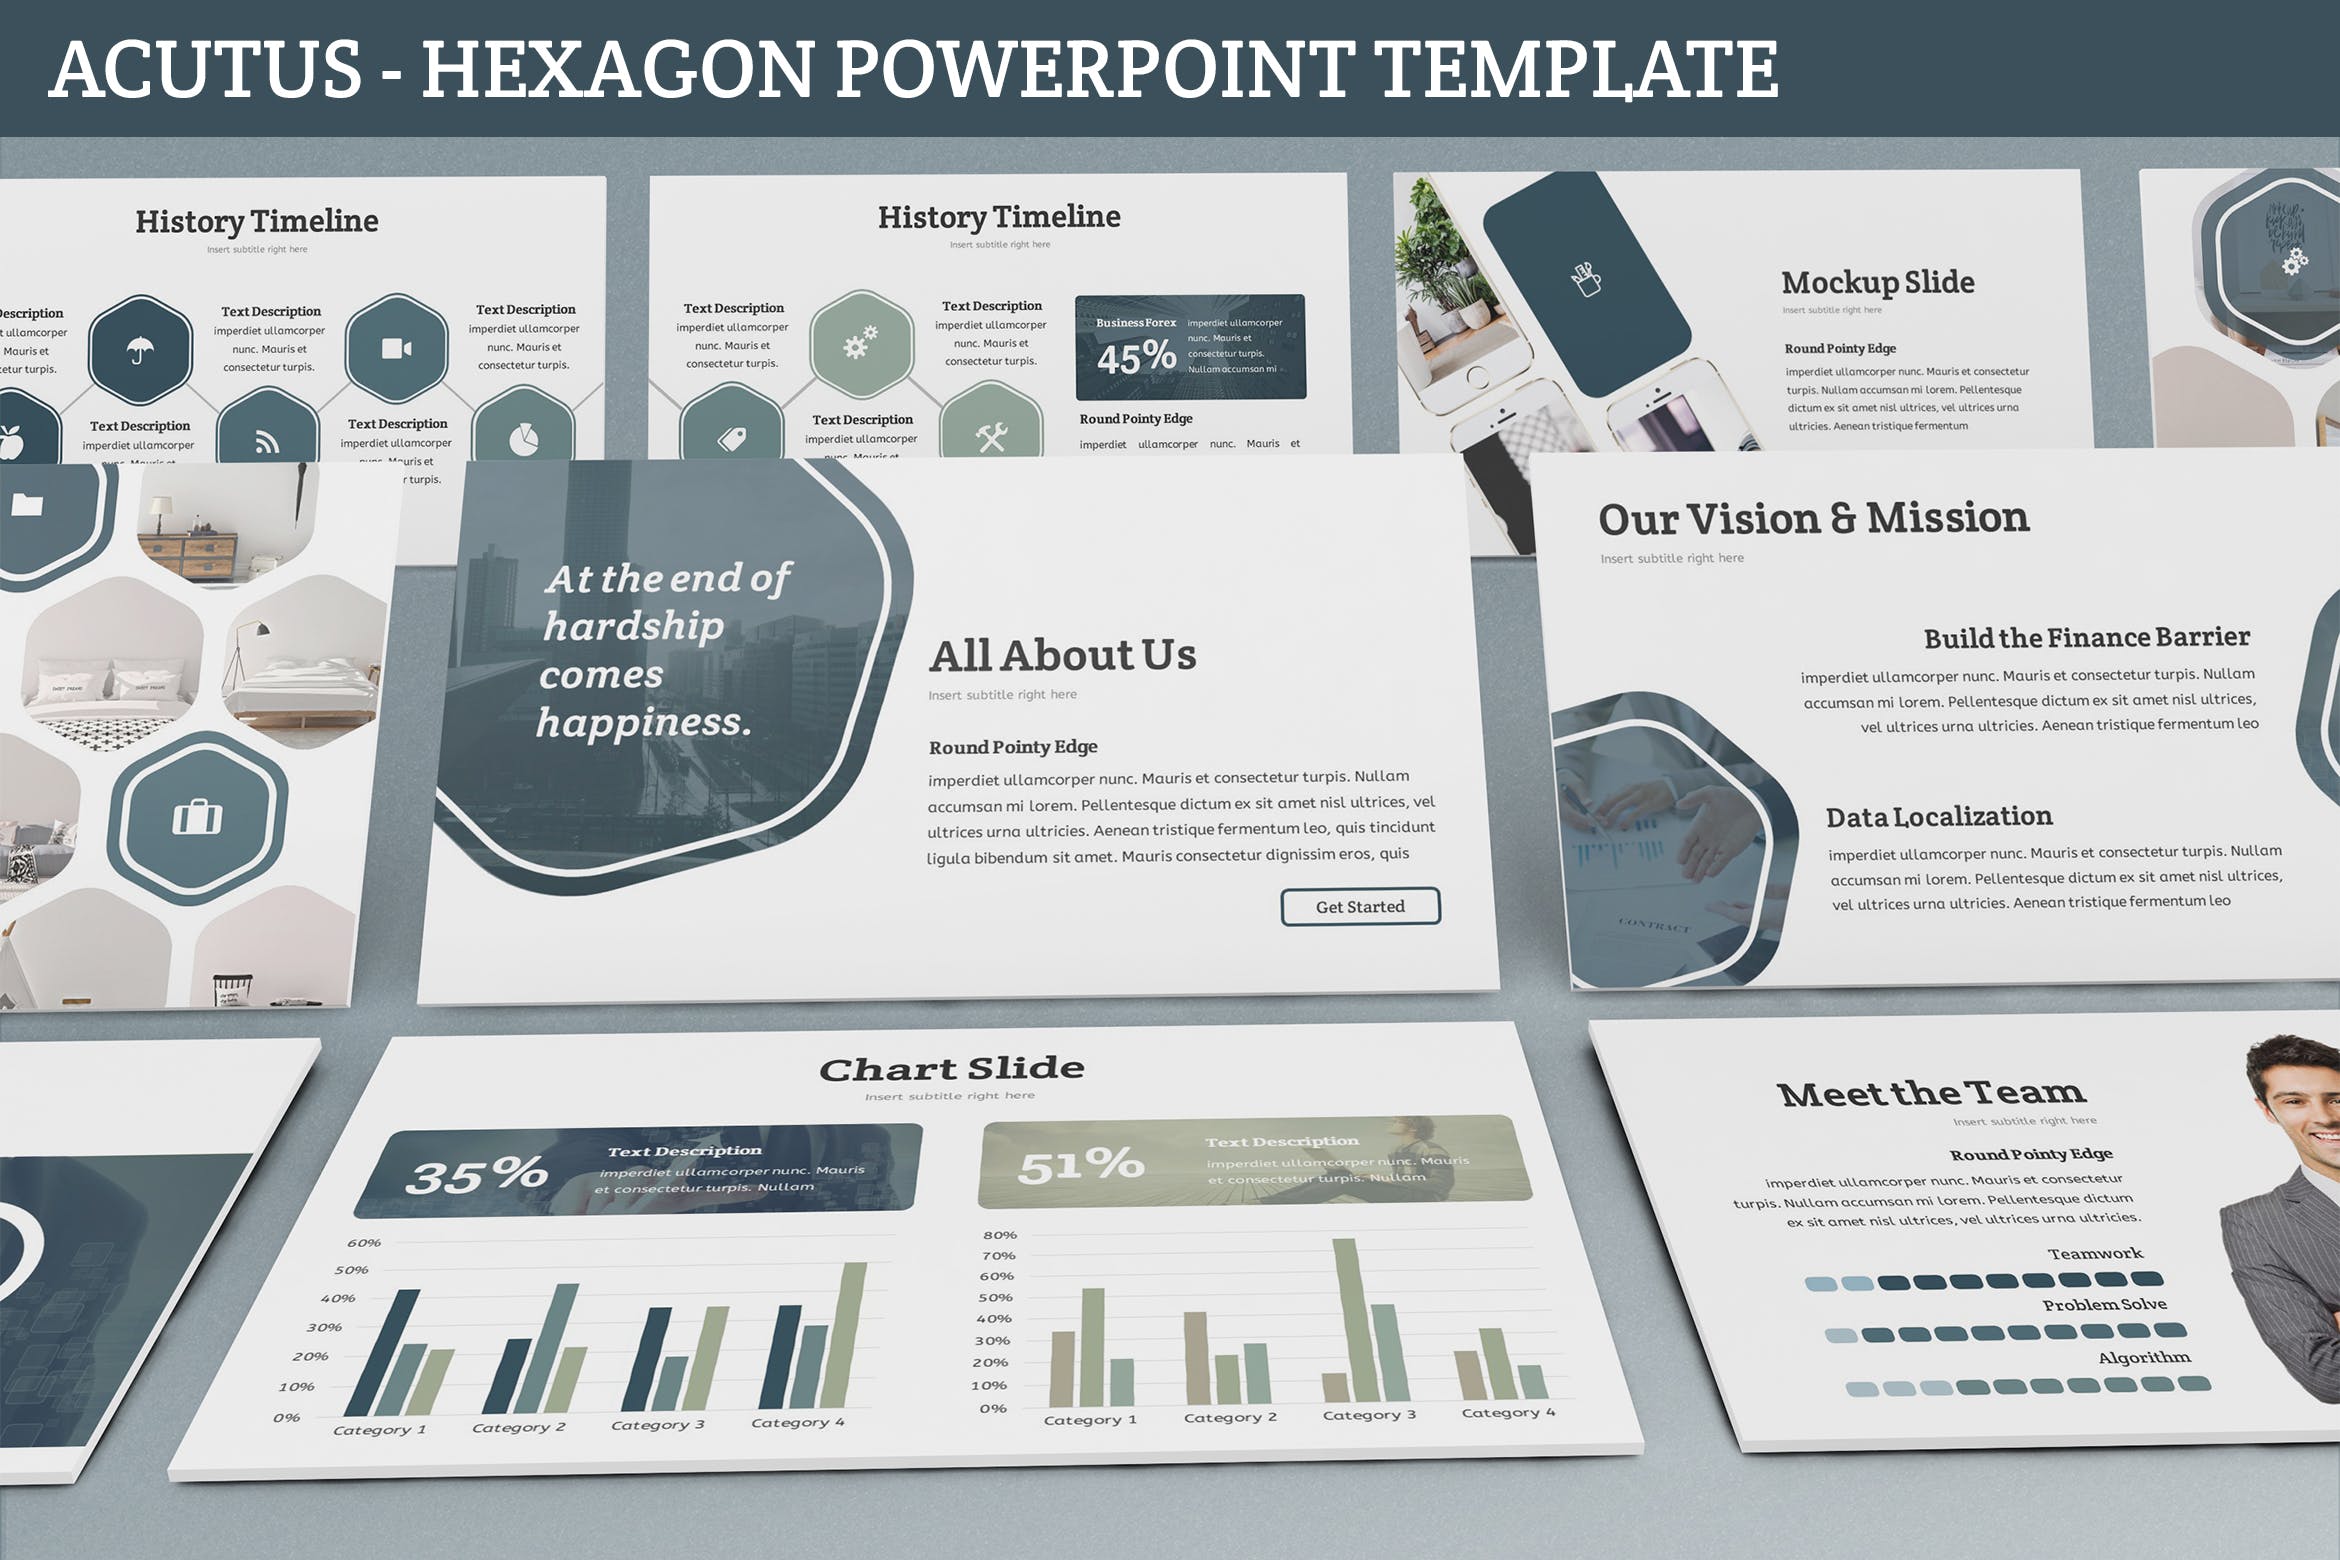 简约设计风格企业里程碑/企业宣传PPT模板下载 Acutus – Hexagon Powerpoint Template插图